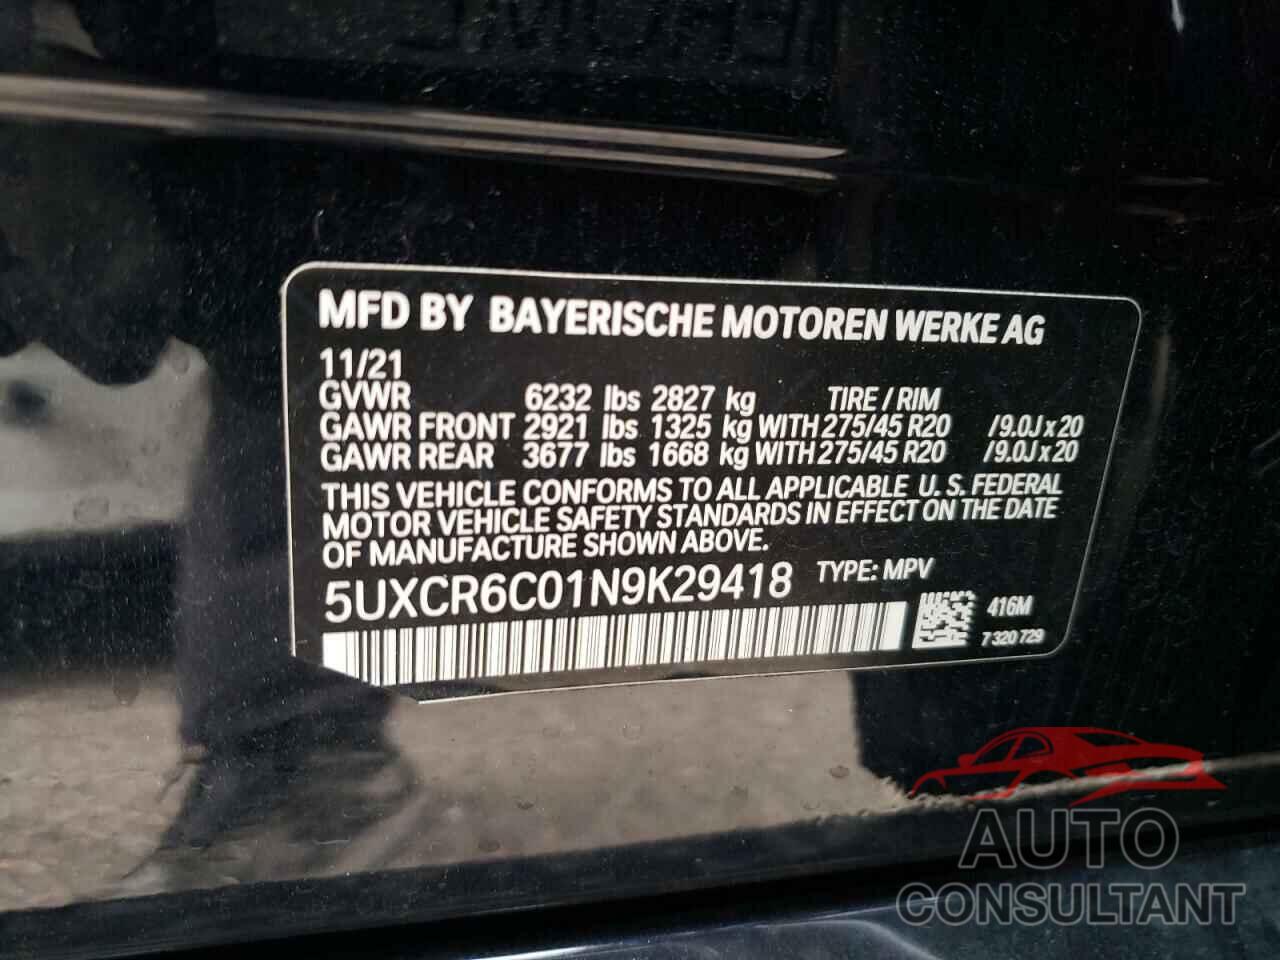 BMW X5 2022 - 5UXCR6C01N9K29418